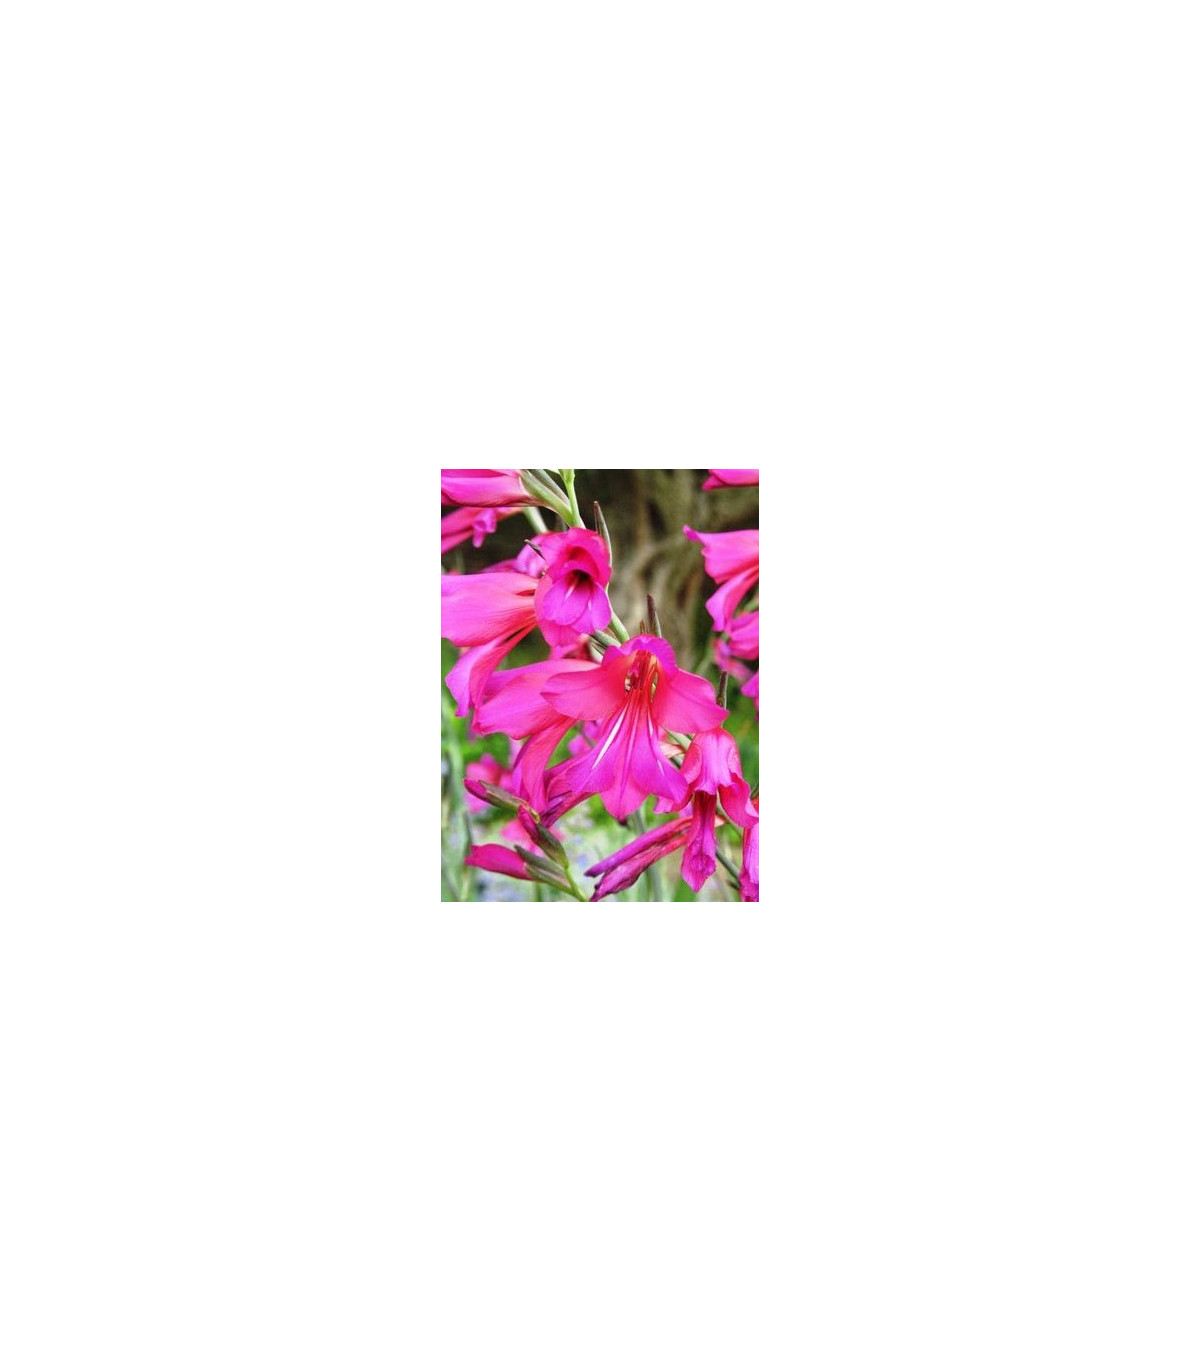 Gladiola obyčajná - Gladiolus byzantinus communis - predaj cibuľovín - 3 ks